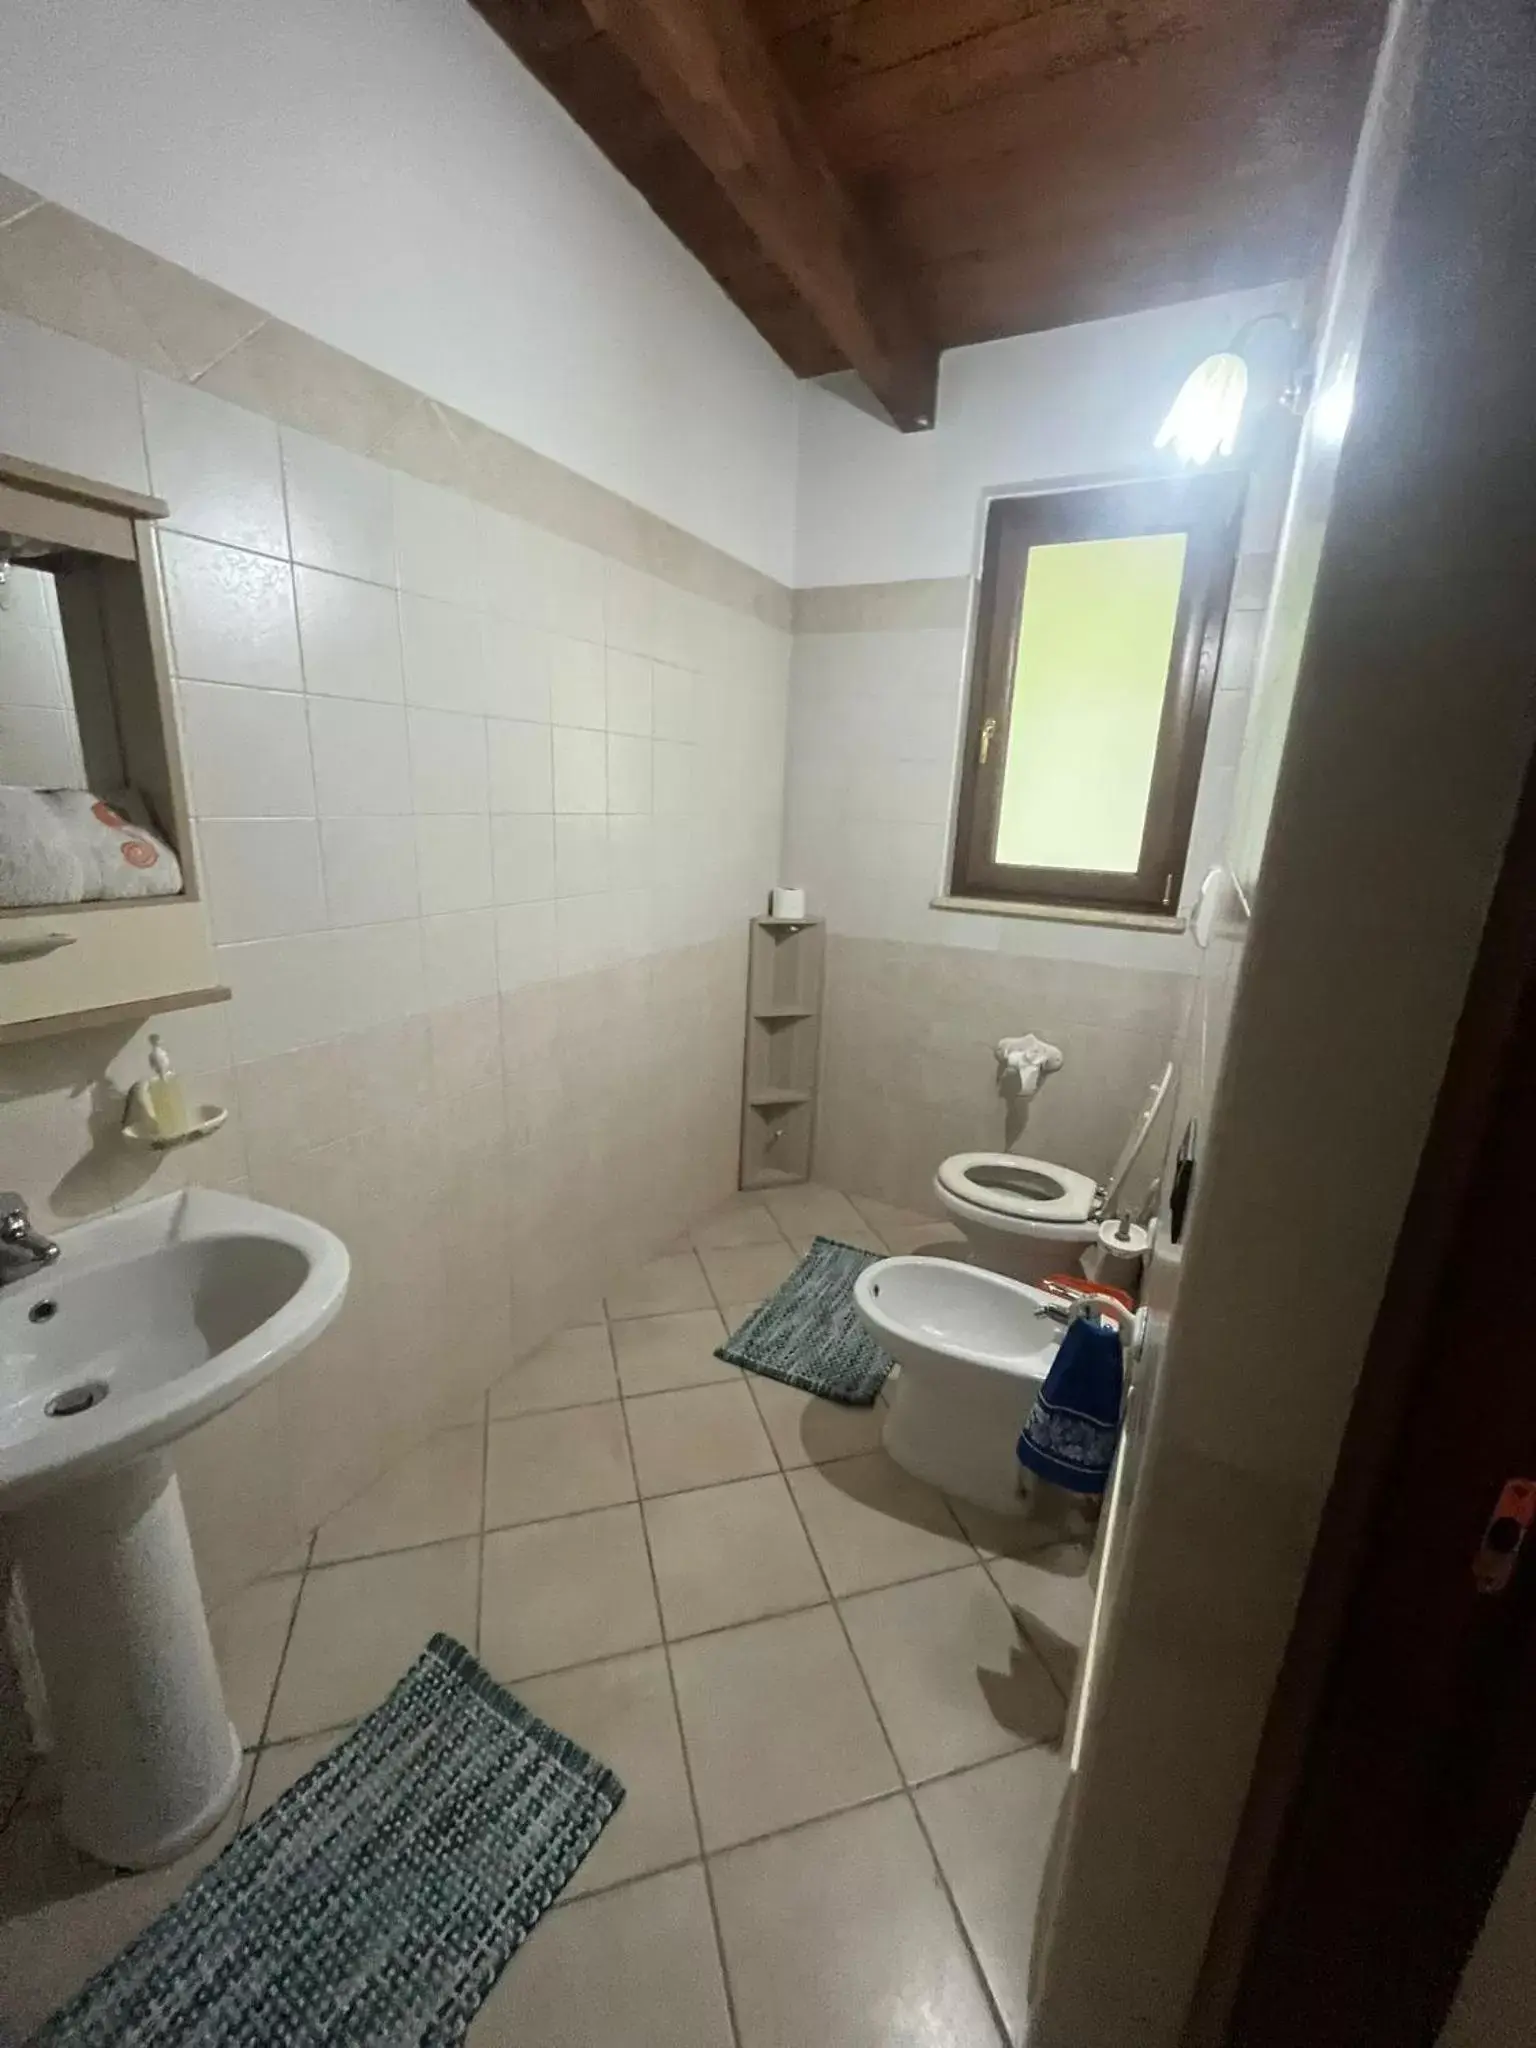 Bathroom in Villa Marano